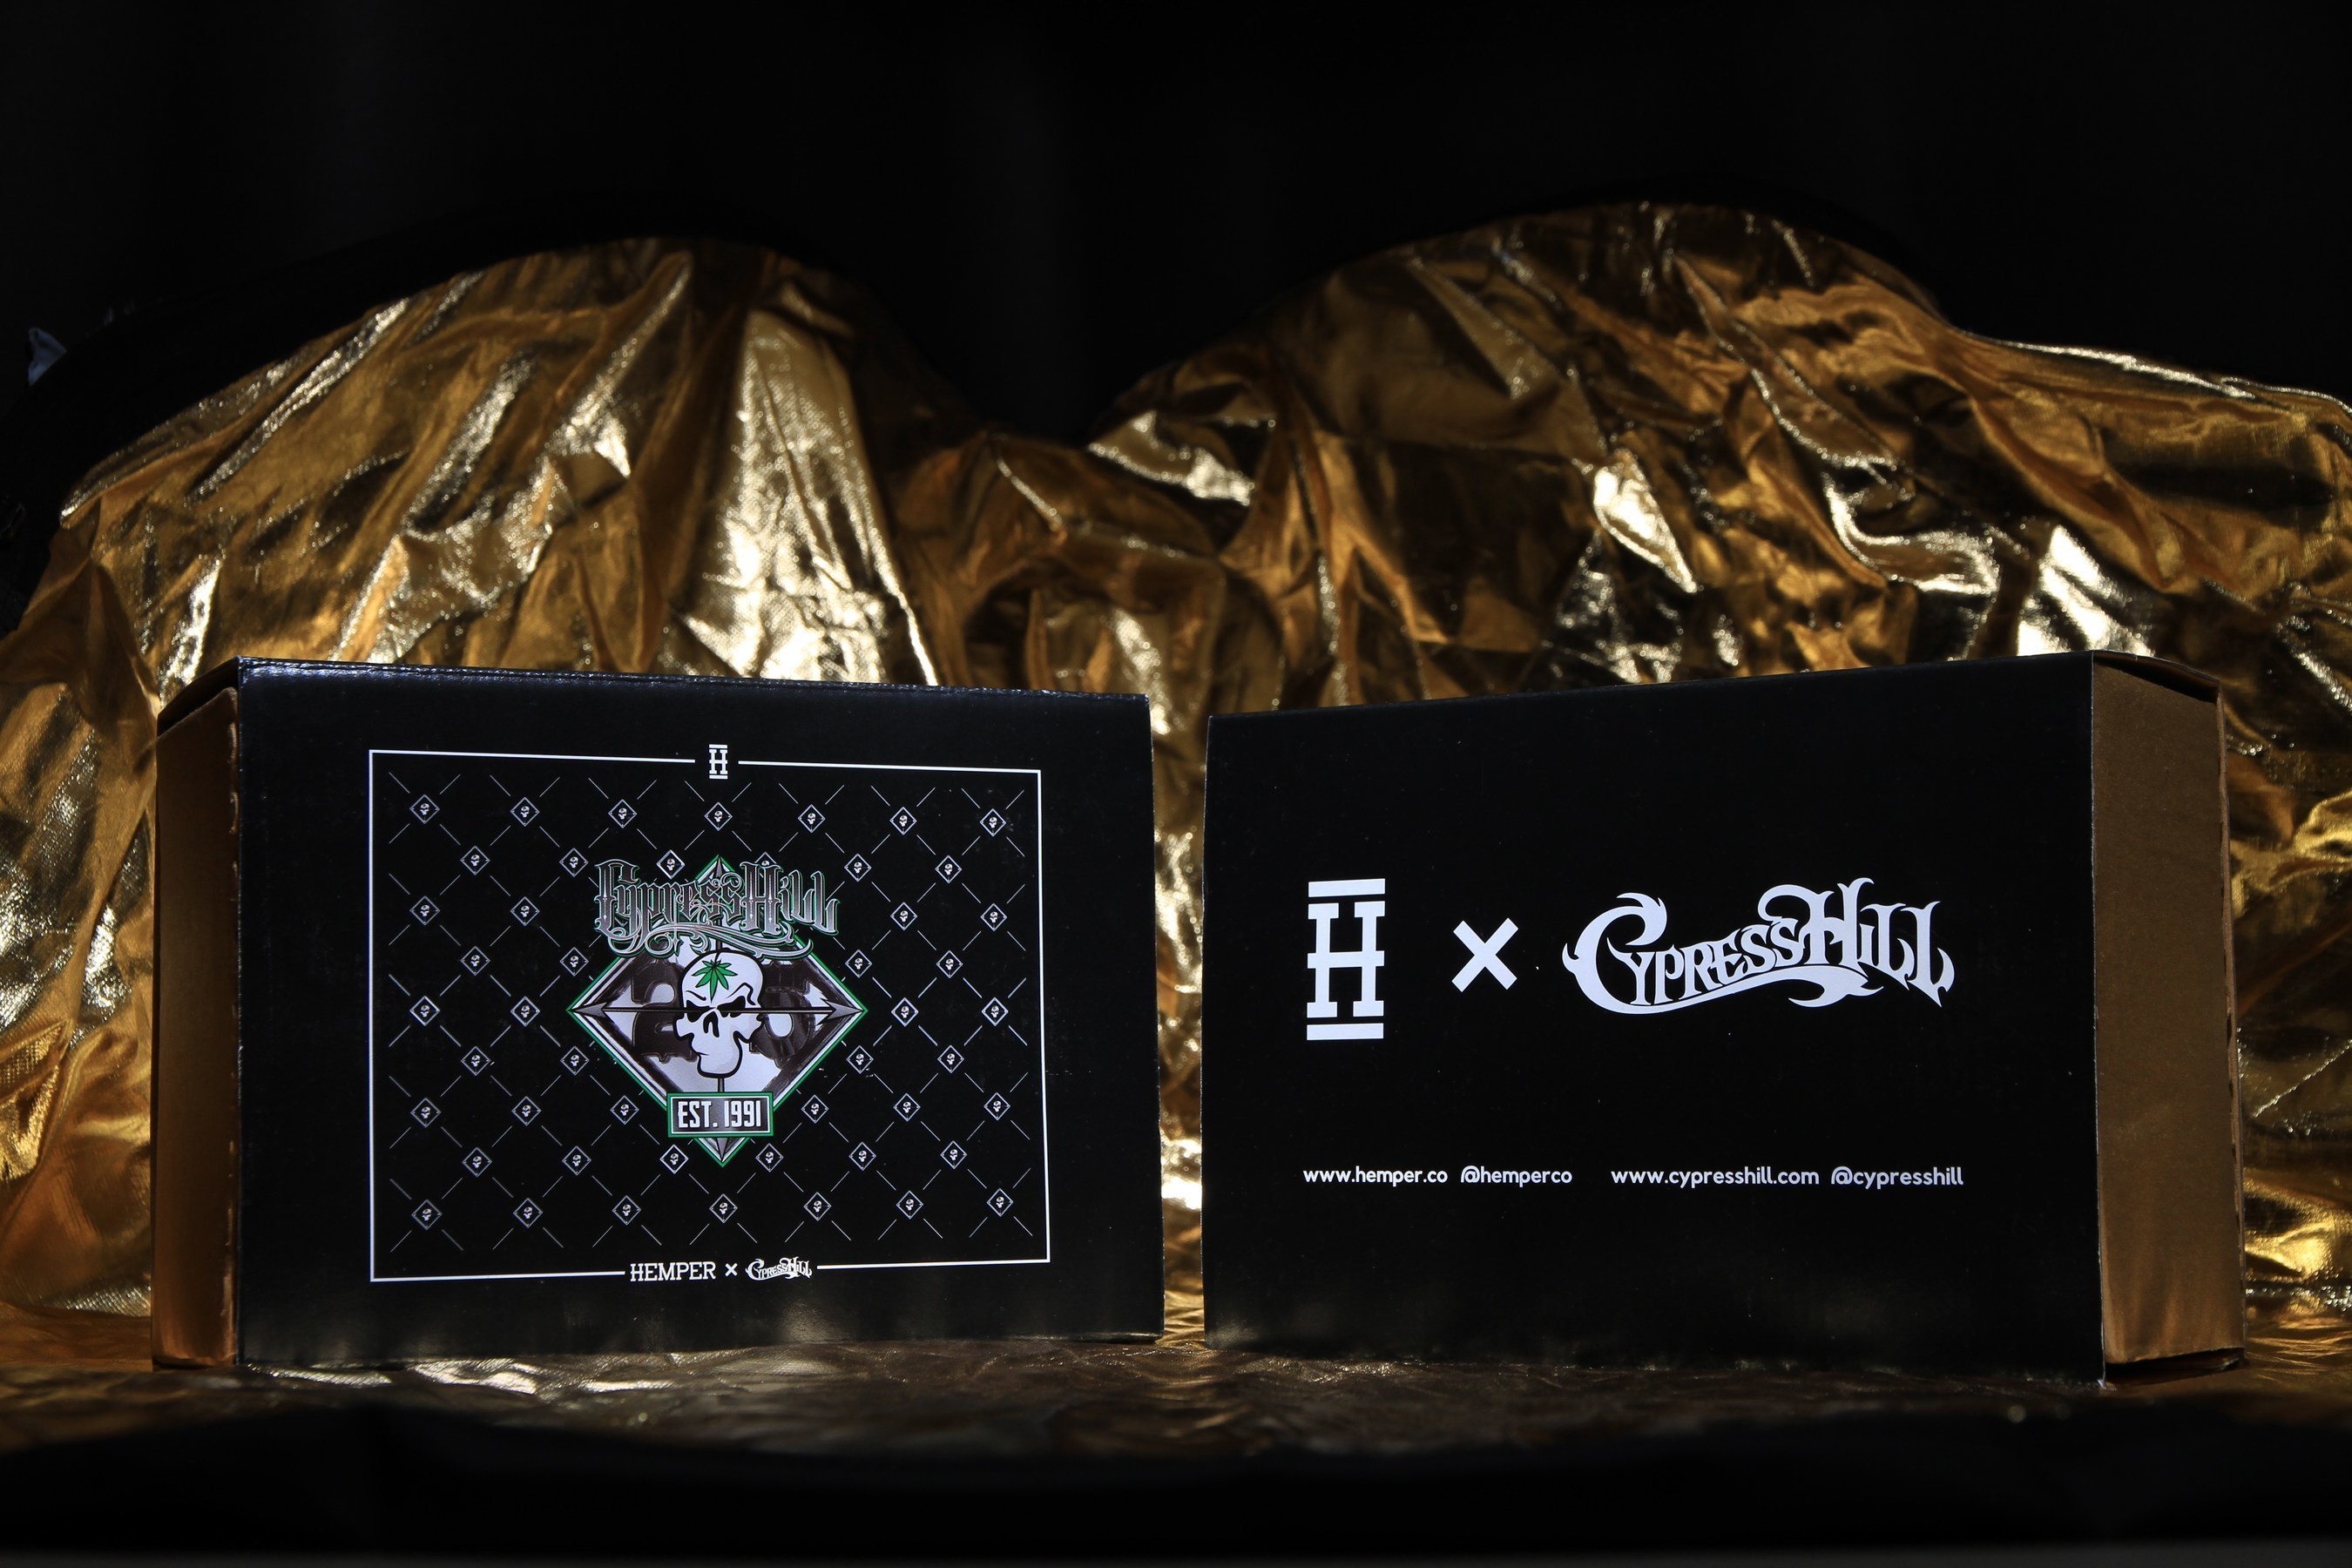 Hemper Co X Cypress Hill 25th Anniversary Box